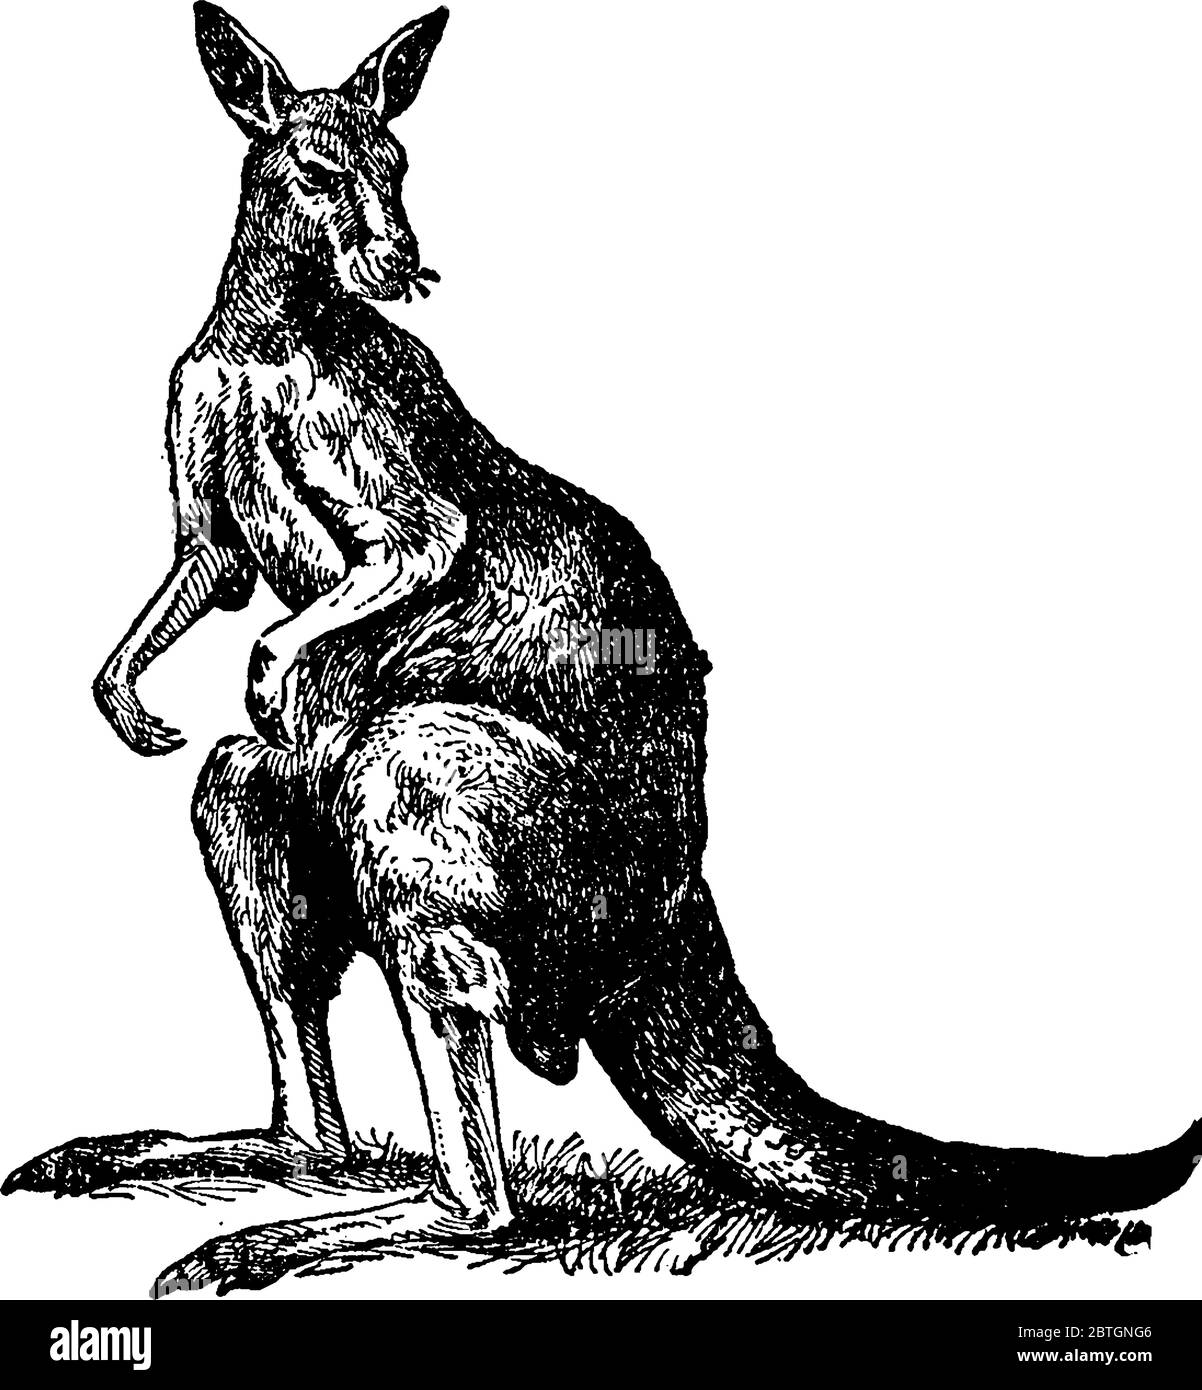 Sono un animale dell'Australia, con la testa piccola, le gambe grandi e potenti della parte posteriore, la coda enorme, gli arti corti di prua ed è circa l'altezza di un uomo. Femmina Illustrazione Vettoriale